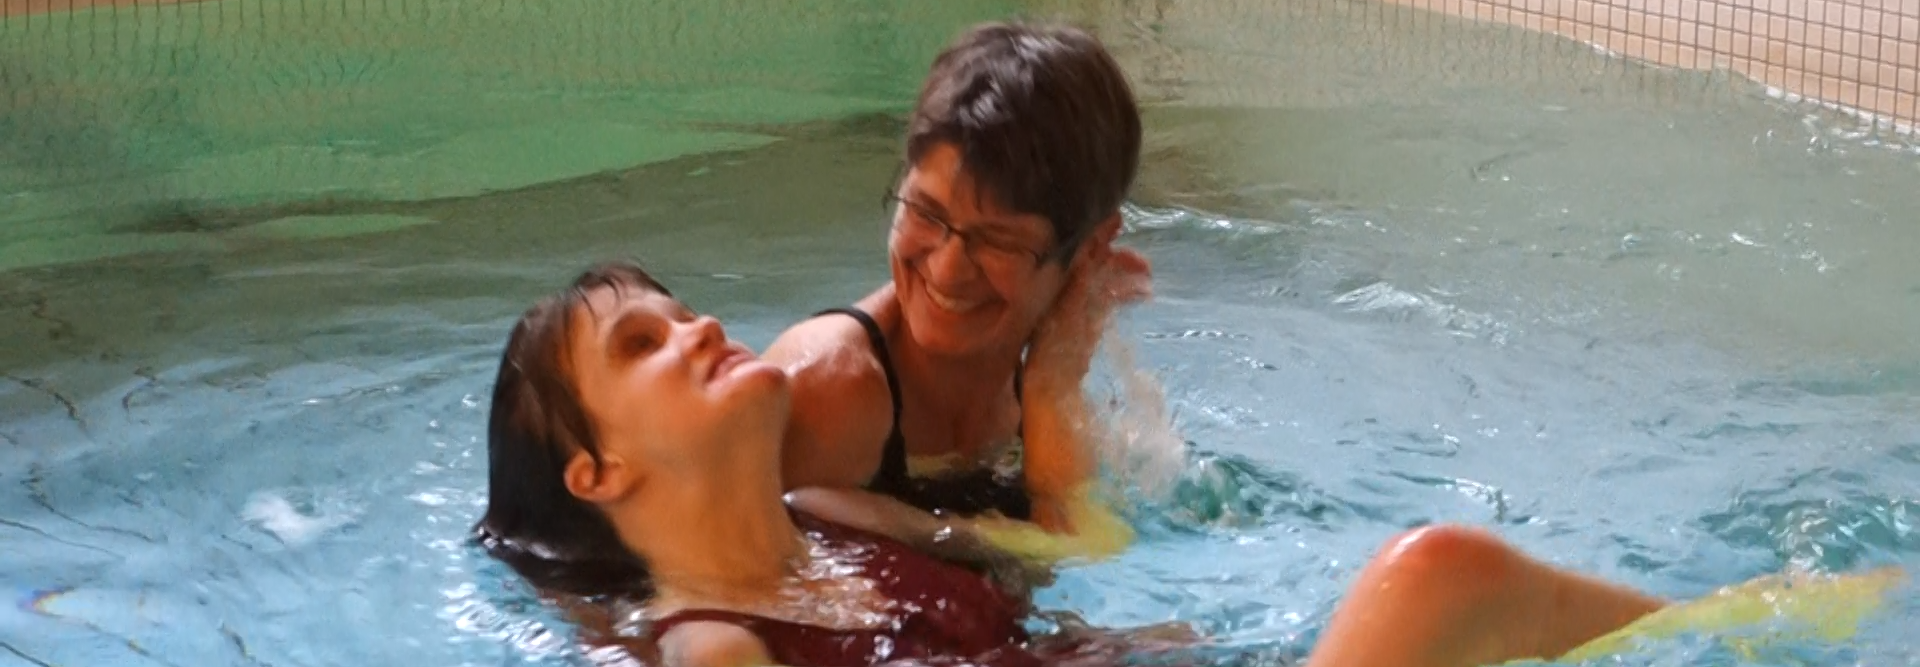 Jeune femme nageant sur le dos, aidée par le physiothérapeute, dans la piscine thérapeutique de Tanne. La scène se caractérise par l'attention chaleureuse et attentive entre les deux femmes.